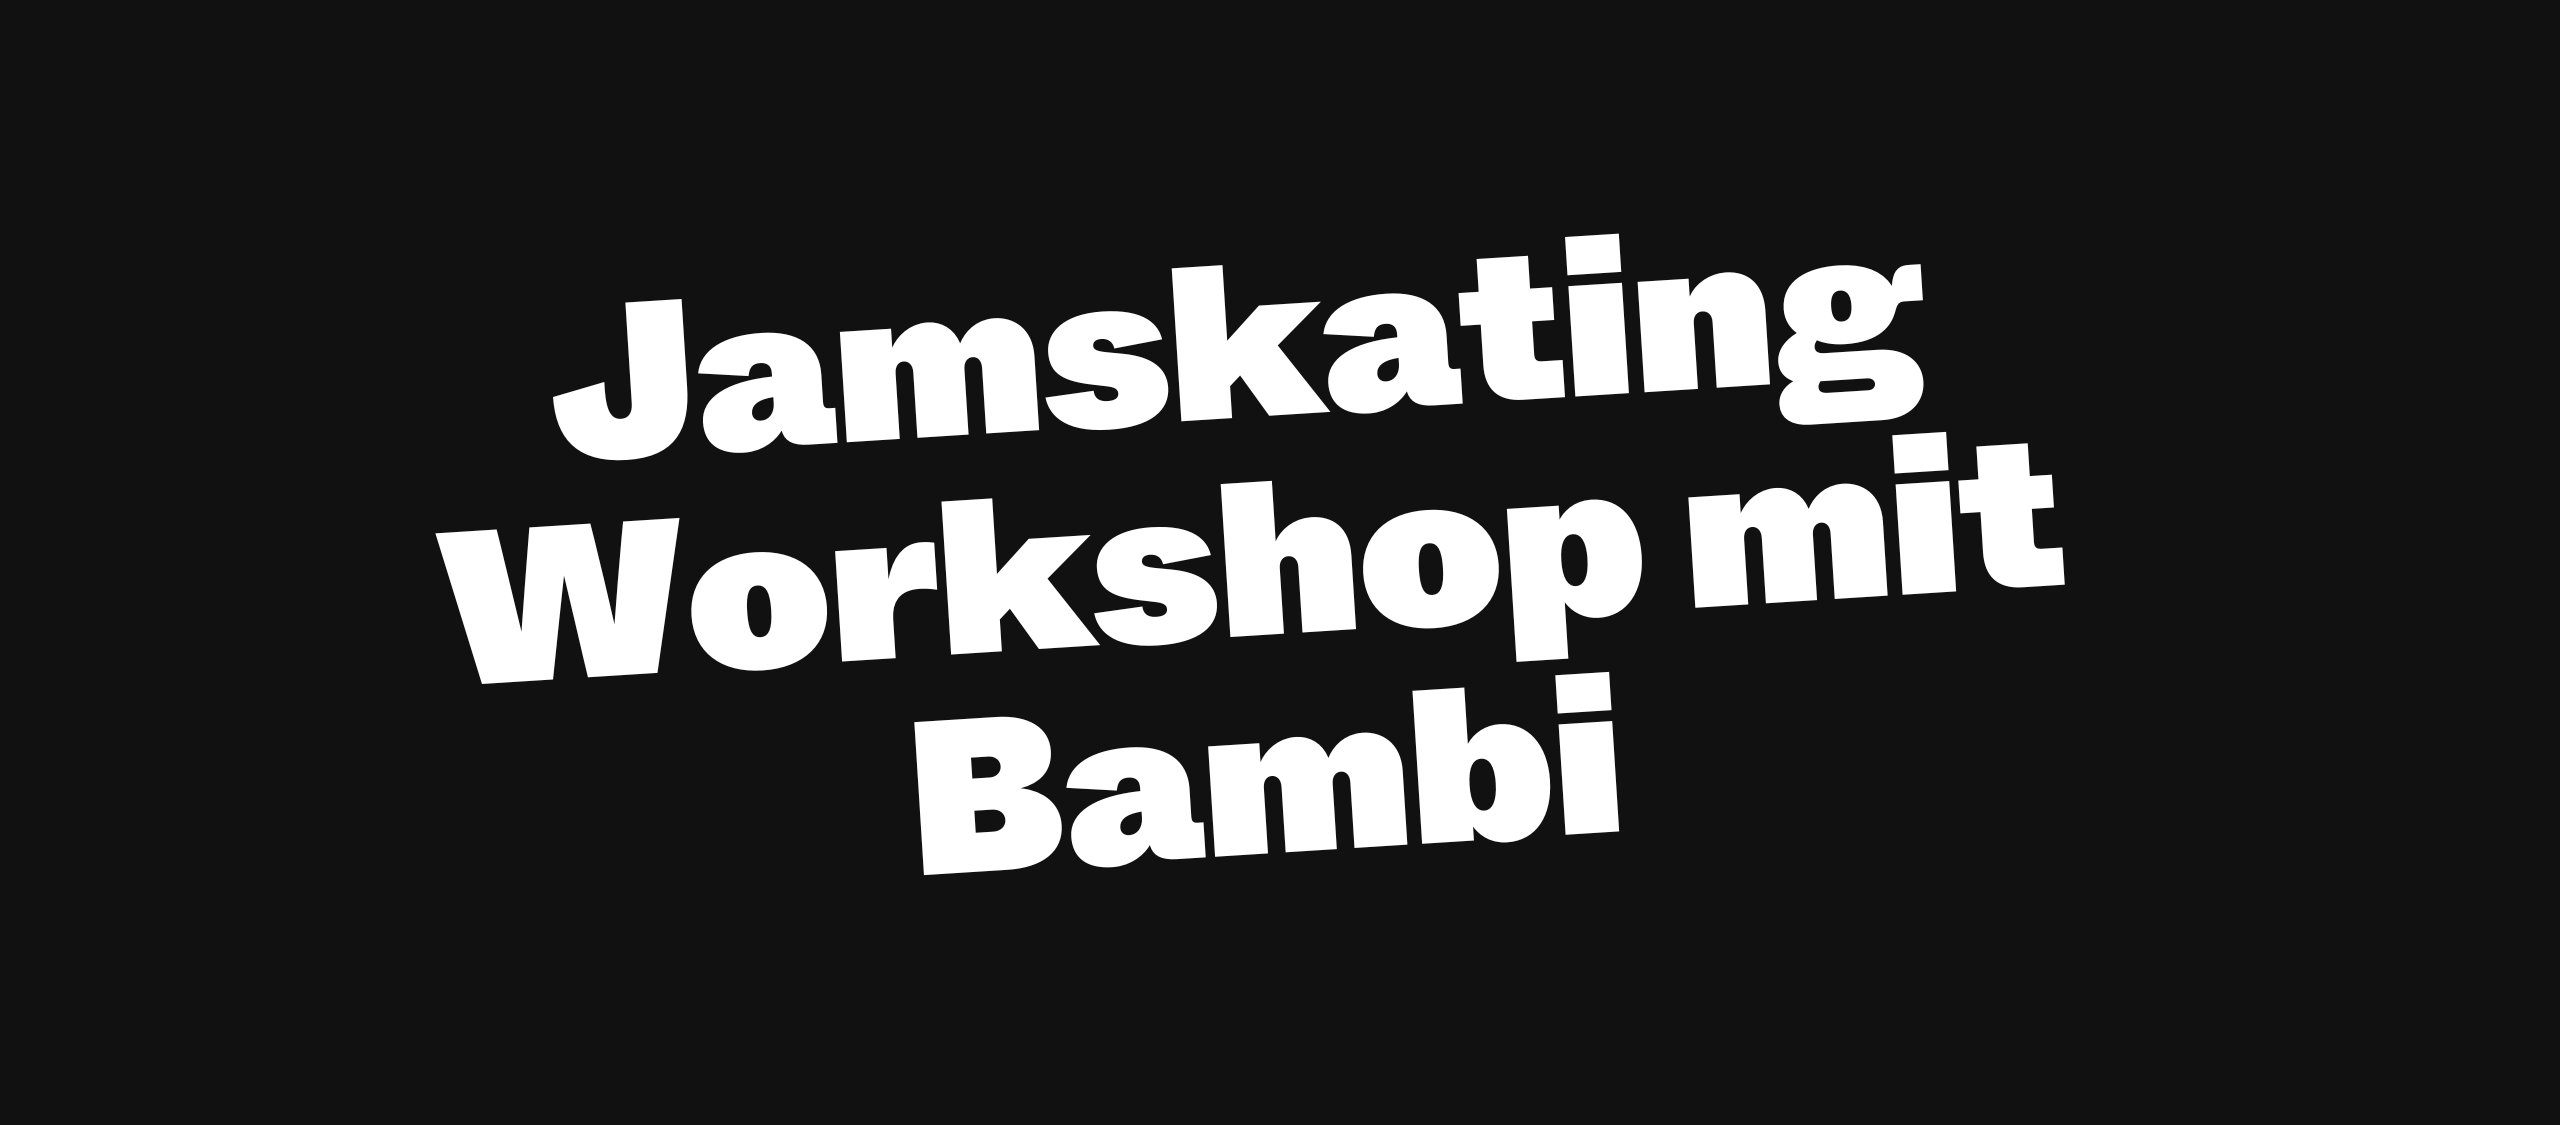 Jamskating Workshop mit Bambi